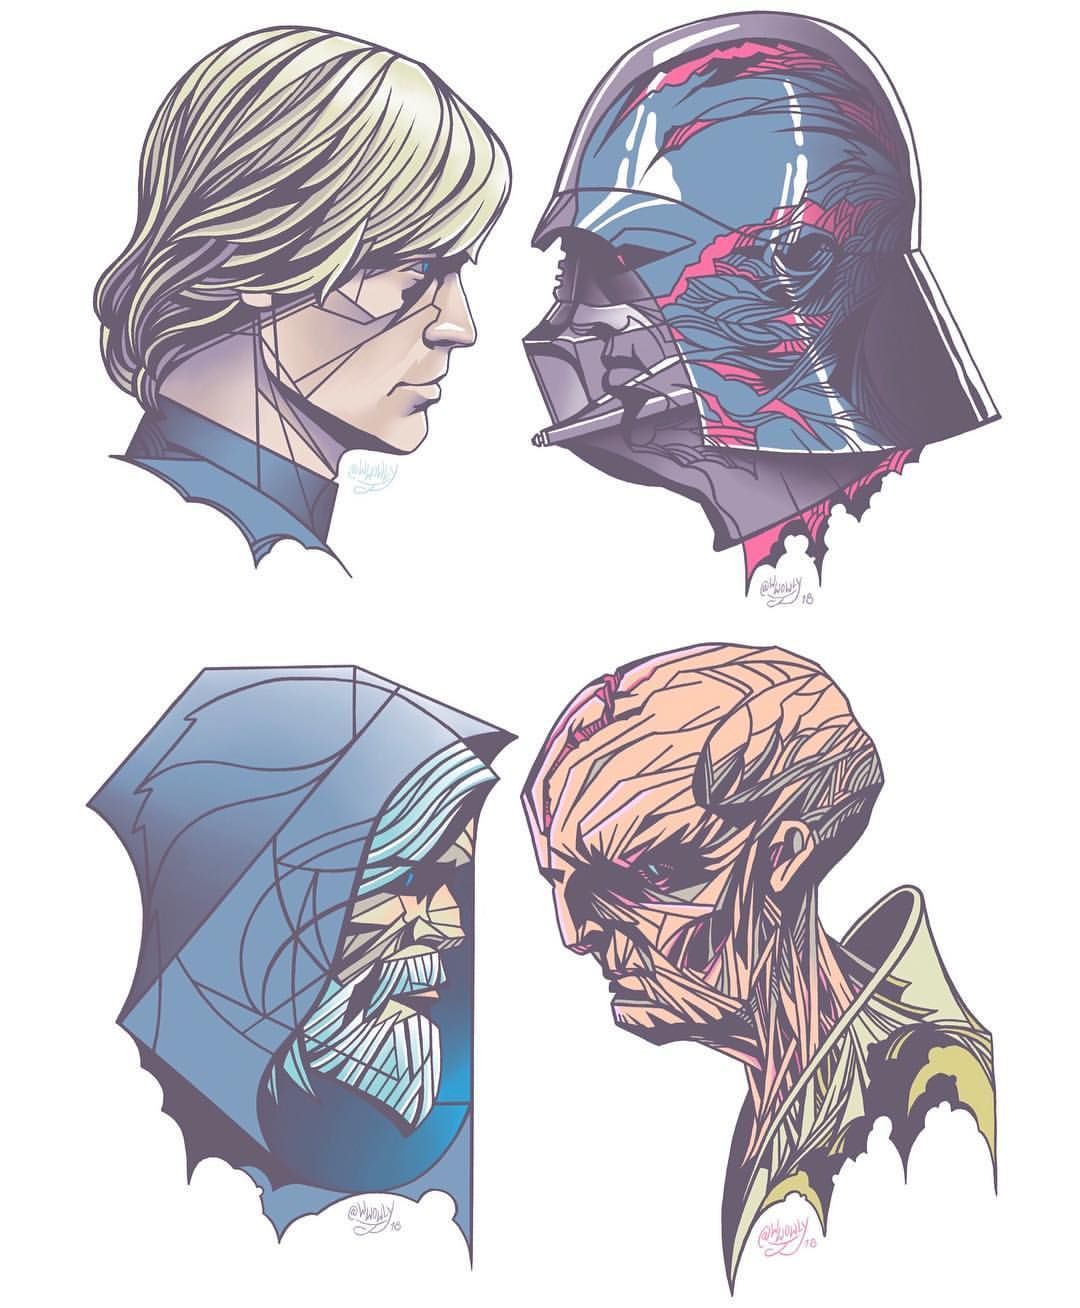 Heroes VS #Villains Tale of Two Lukes #lukeskywalker. .. .. #wwowly #illustration #dra. Star wars art, Star wars artwork, Star wars fan art